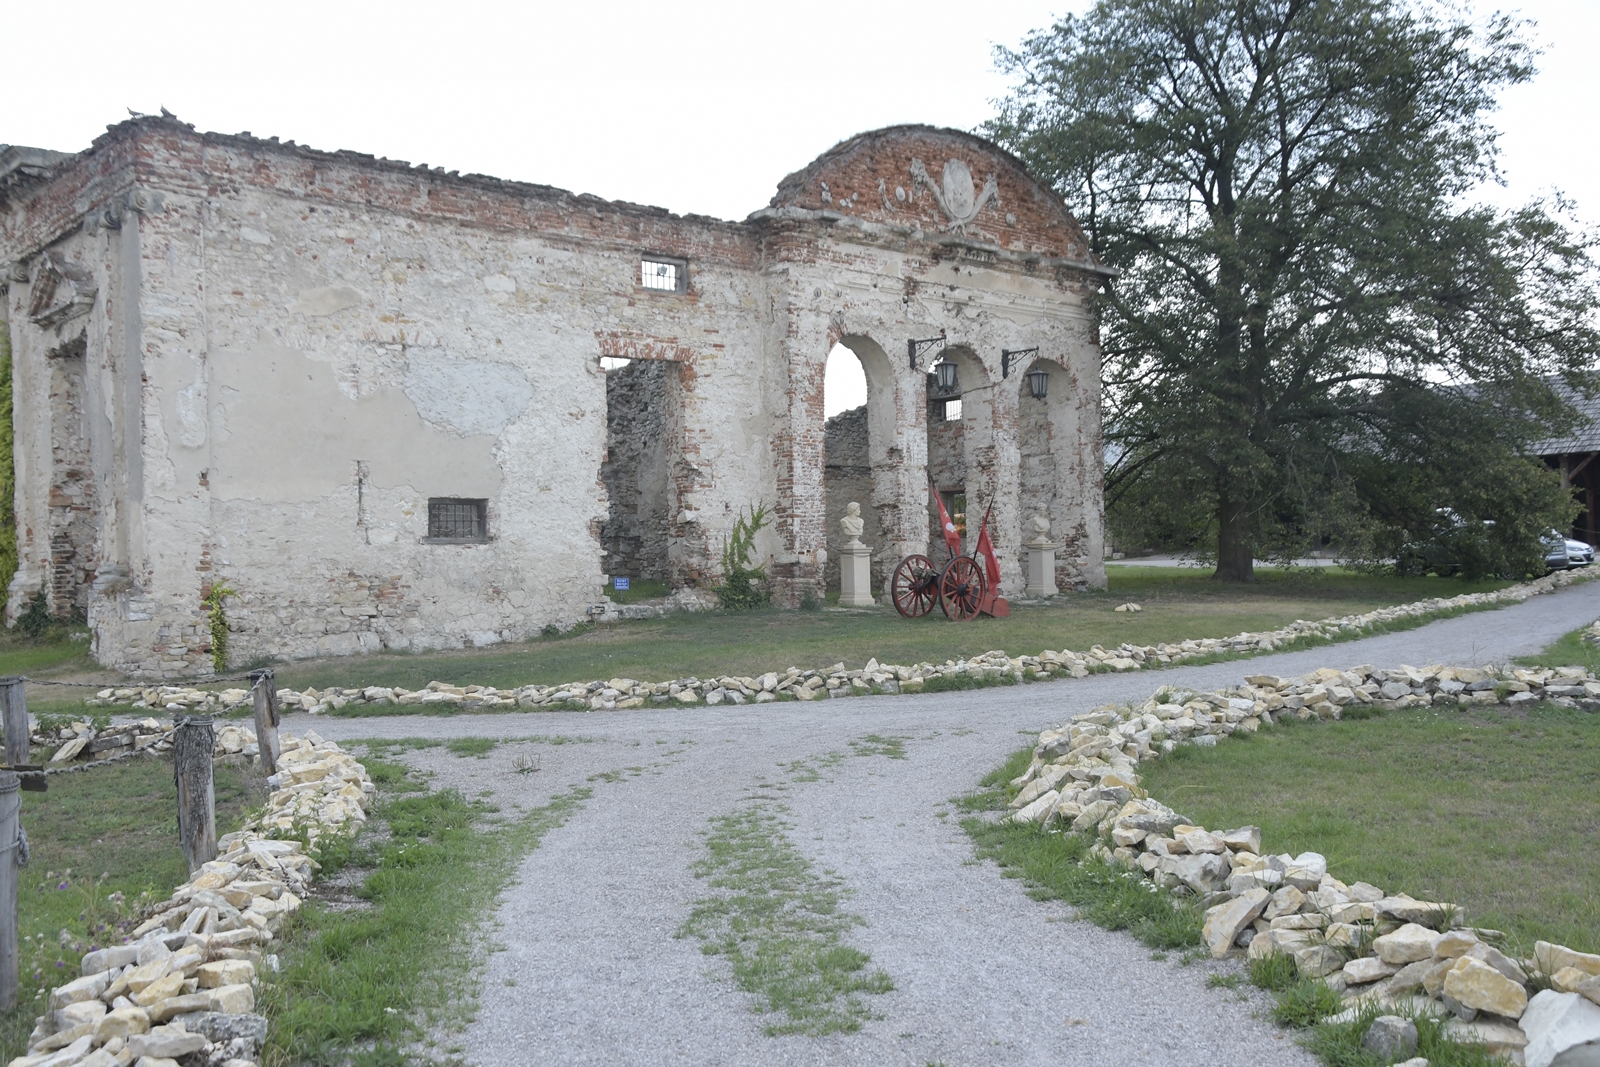 Ścieżka prowadząca do ruin zamku w Sobkowie.